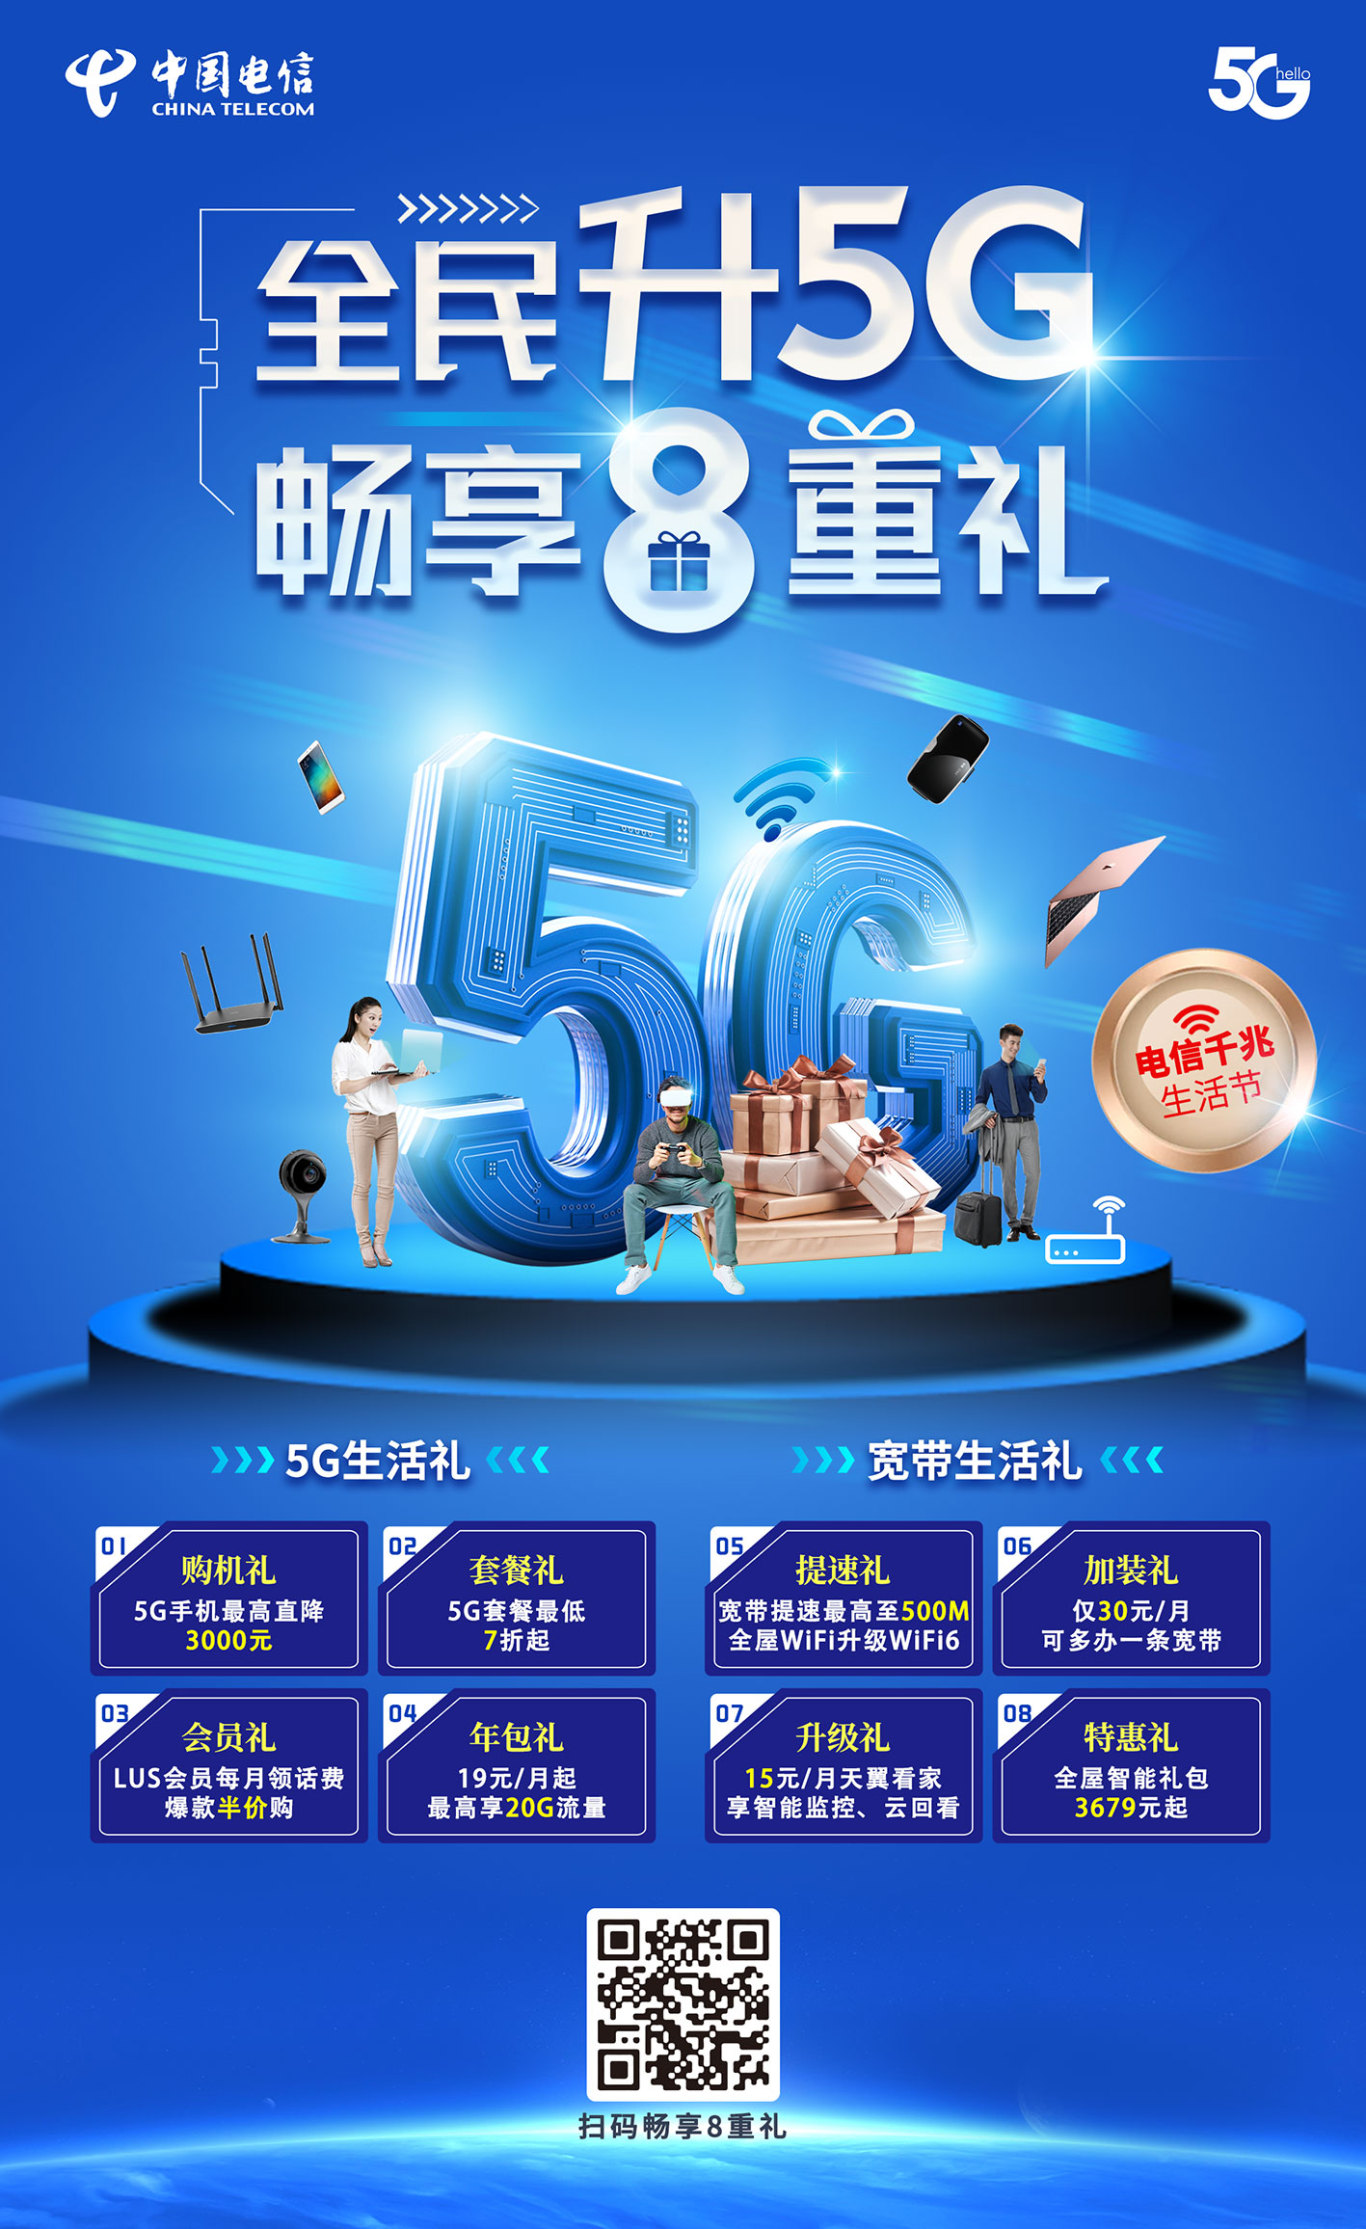 中国电信 主视觉设计 营销海报设计图8